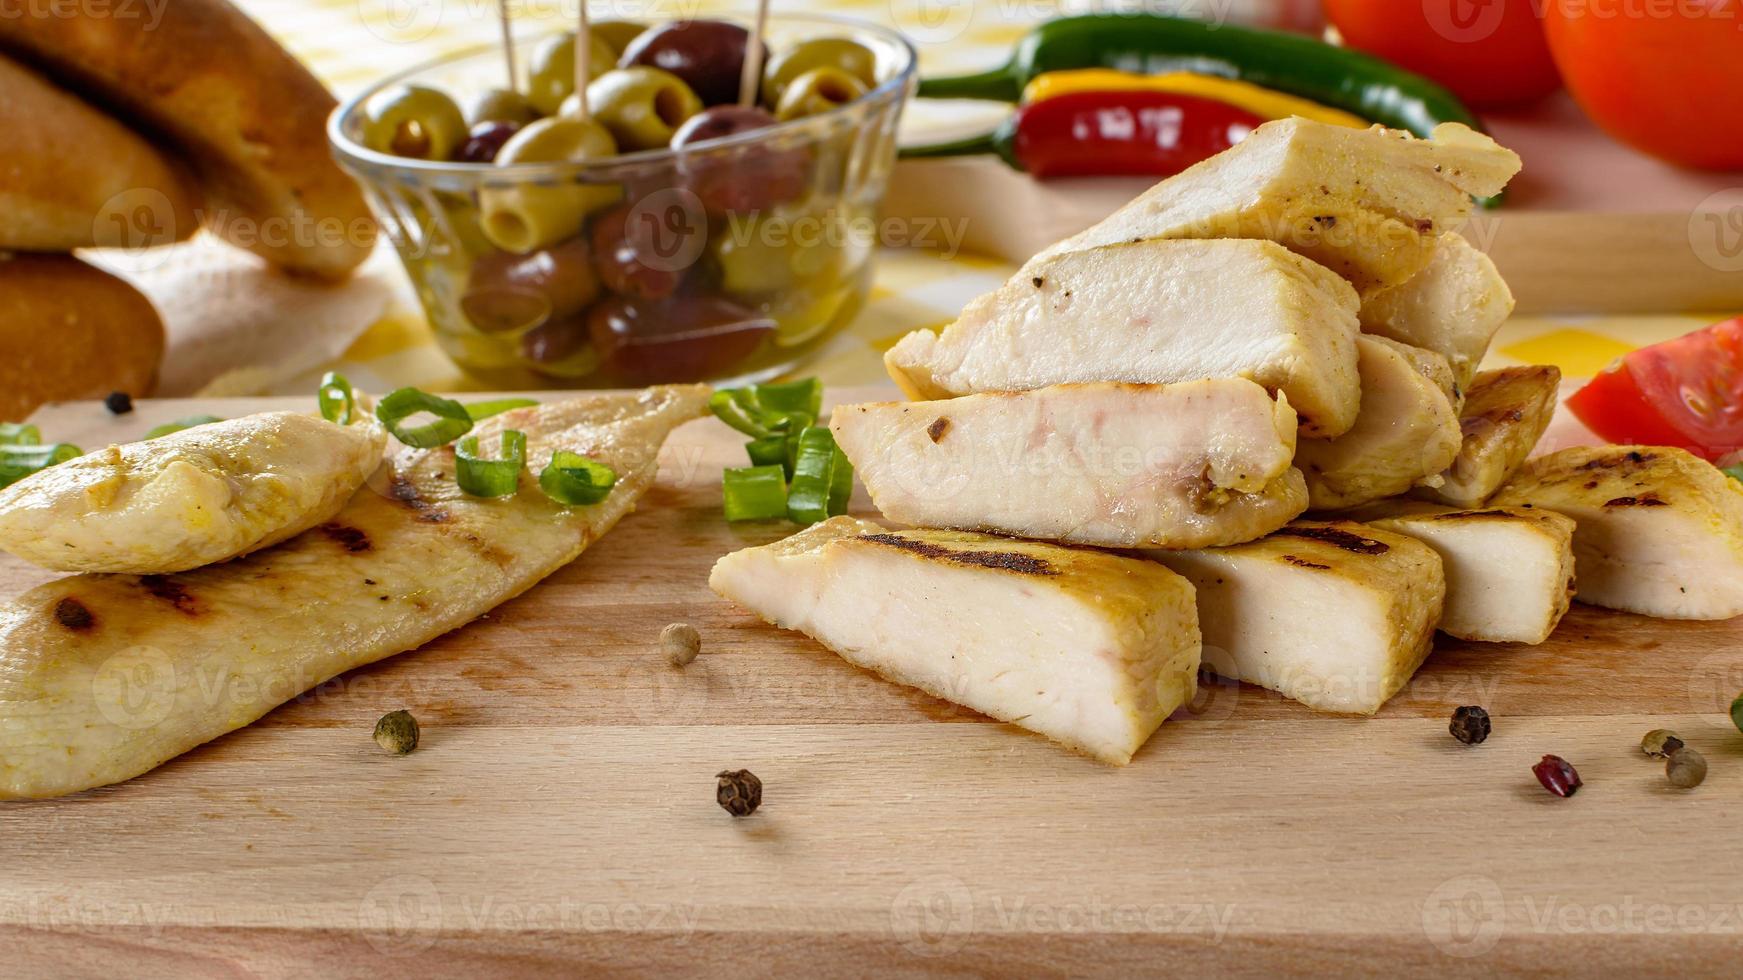 grillat kycklingkött på träplattan med grönsaker och oliver i bakgrunden. foto